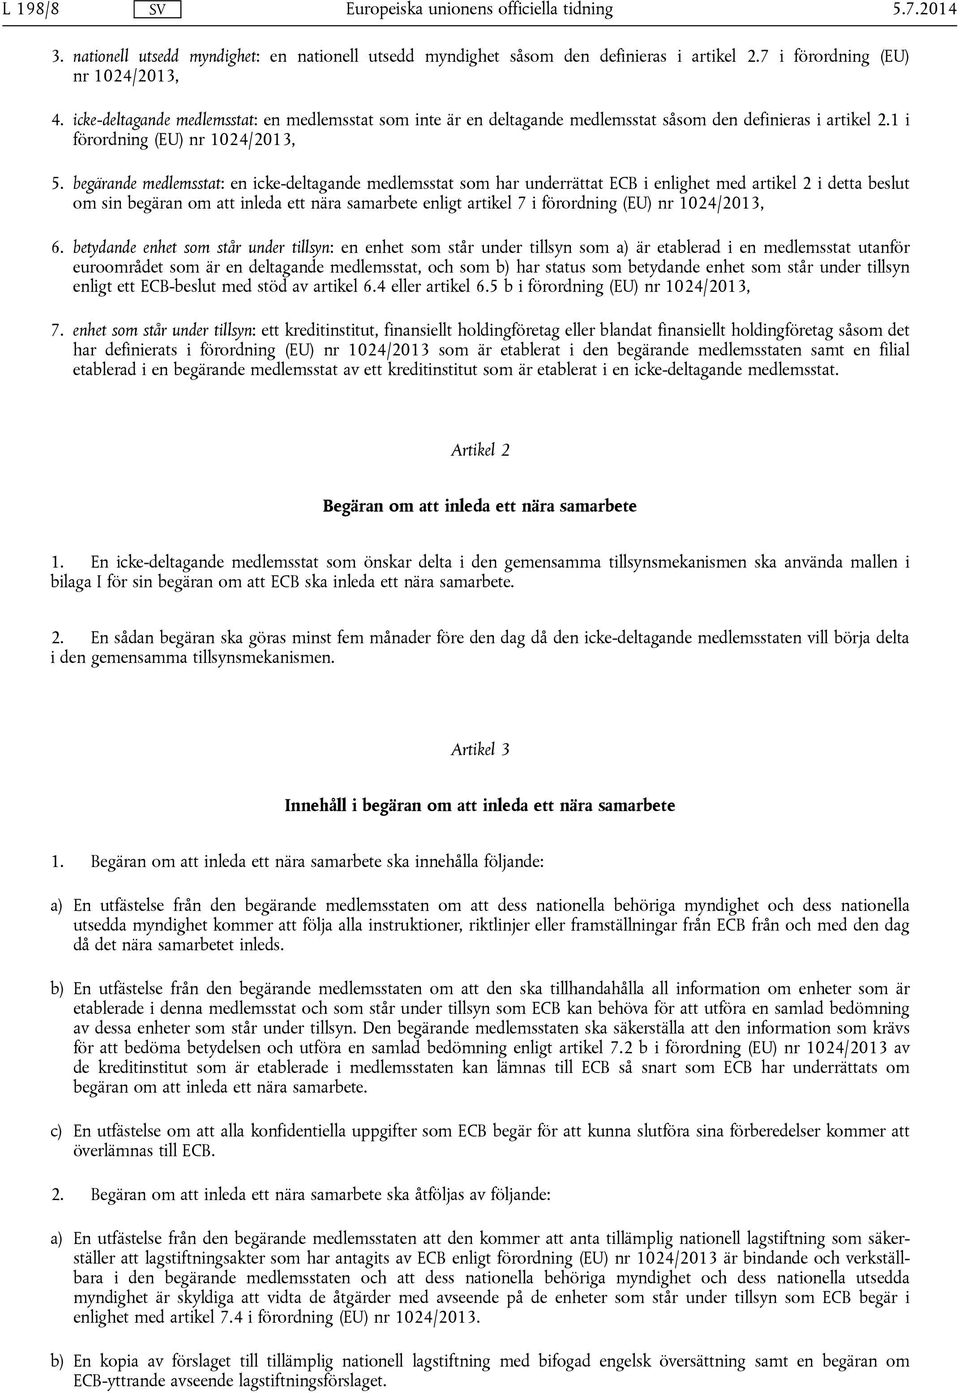 begärande medlemsstat: en icke-deltagande medlemsstat som har underrättat ECB i enlighet med artikel 2 i detta beslut om sin begäran om att inleda ett nära samarbete enligt artikel 7 i förordning